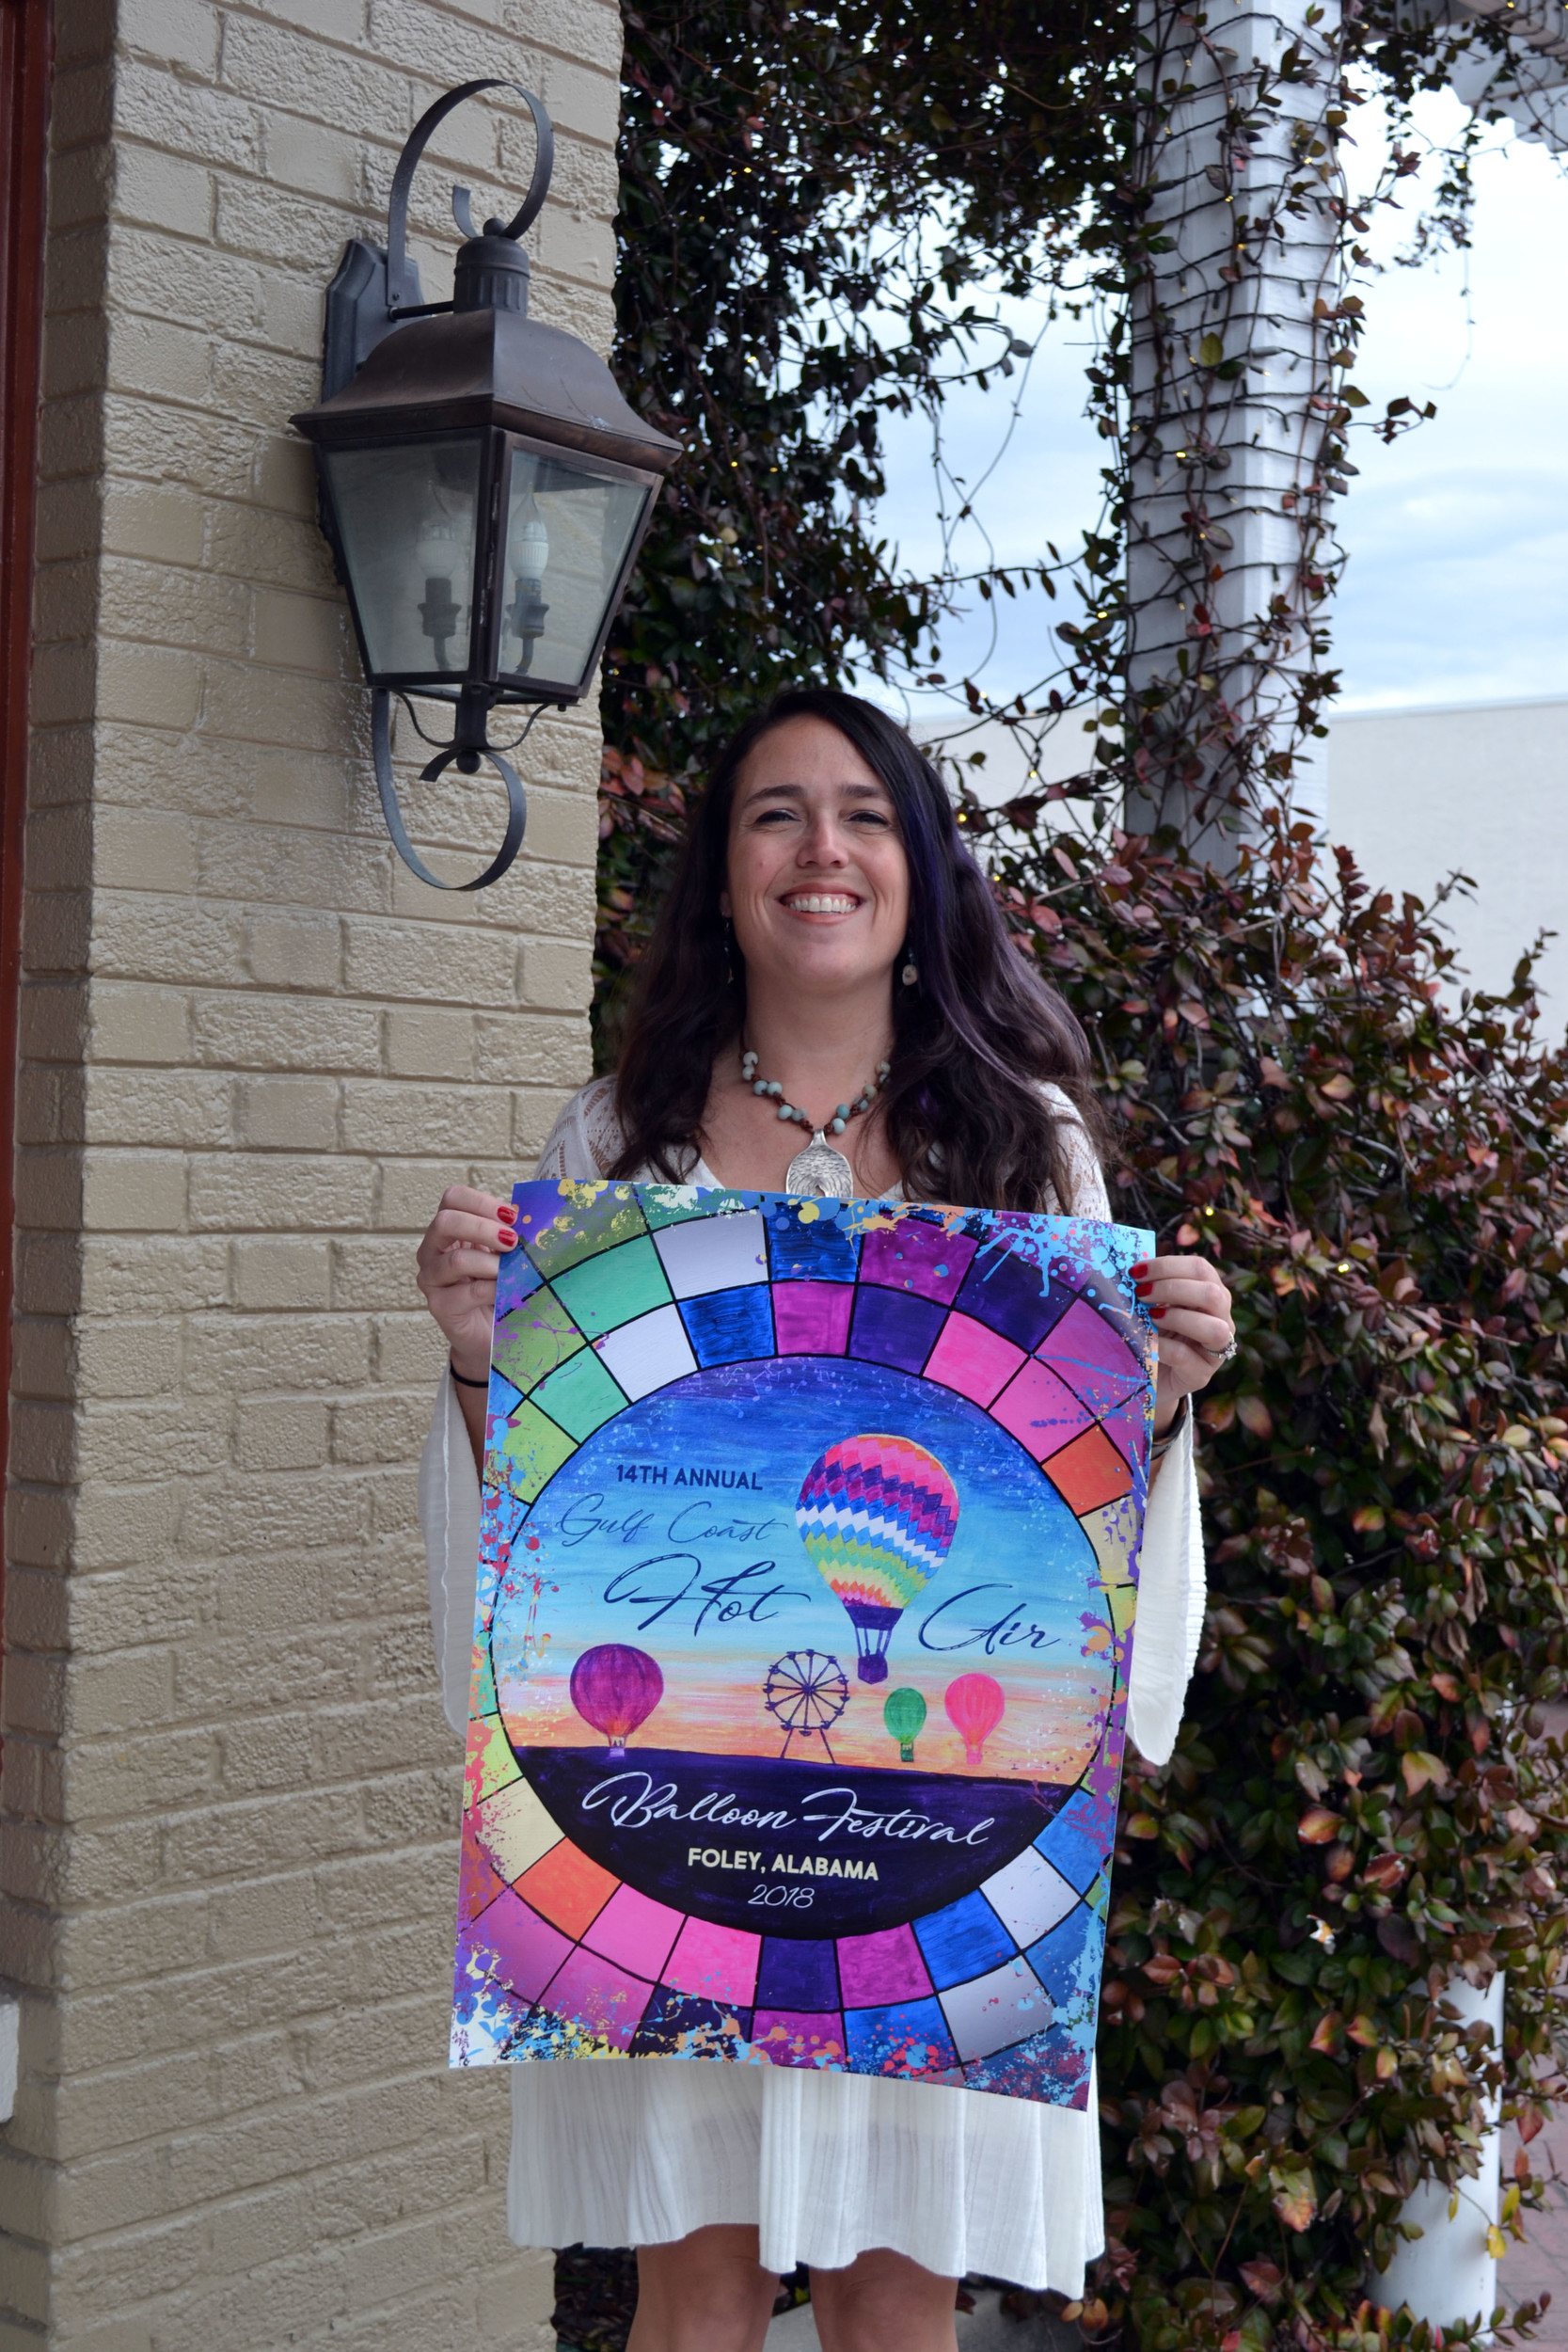 14th Annual Gulf Coast Hot Air Balloon Festival official poster design winner, Tara McMeans, Gulf Shores, AL.